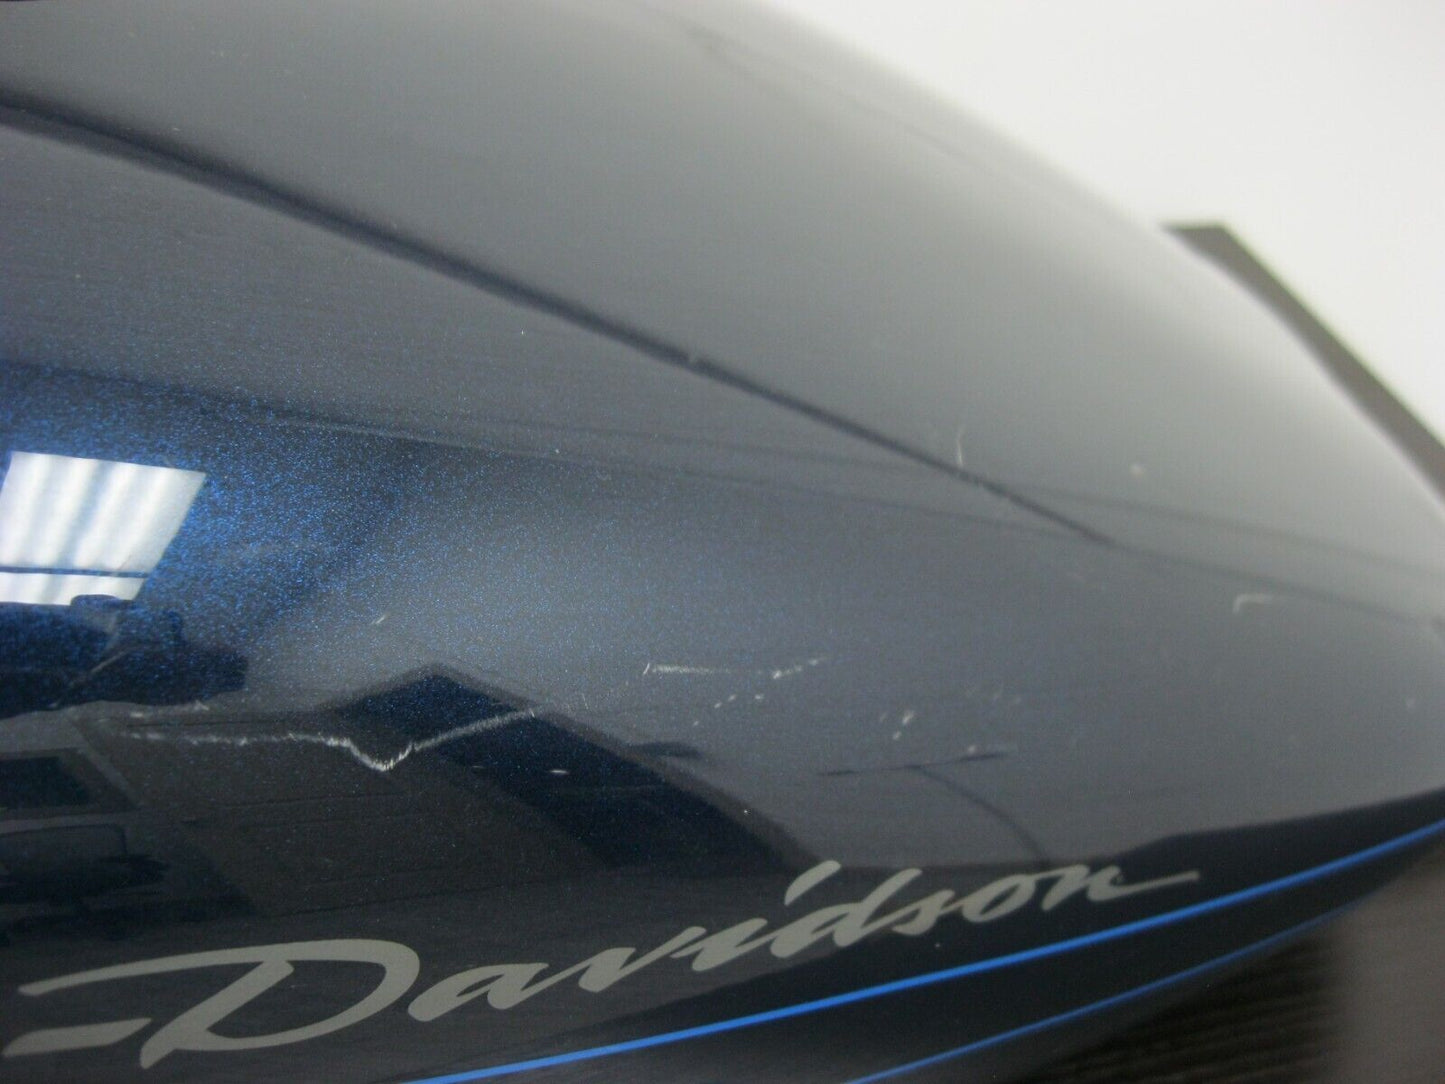 Harley Davidson OEM Metallic Blue Tank '08-Later FLH Touring Models 61356-08